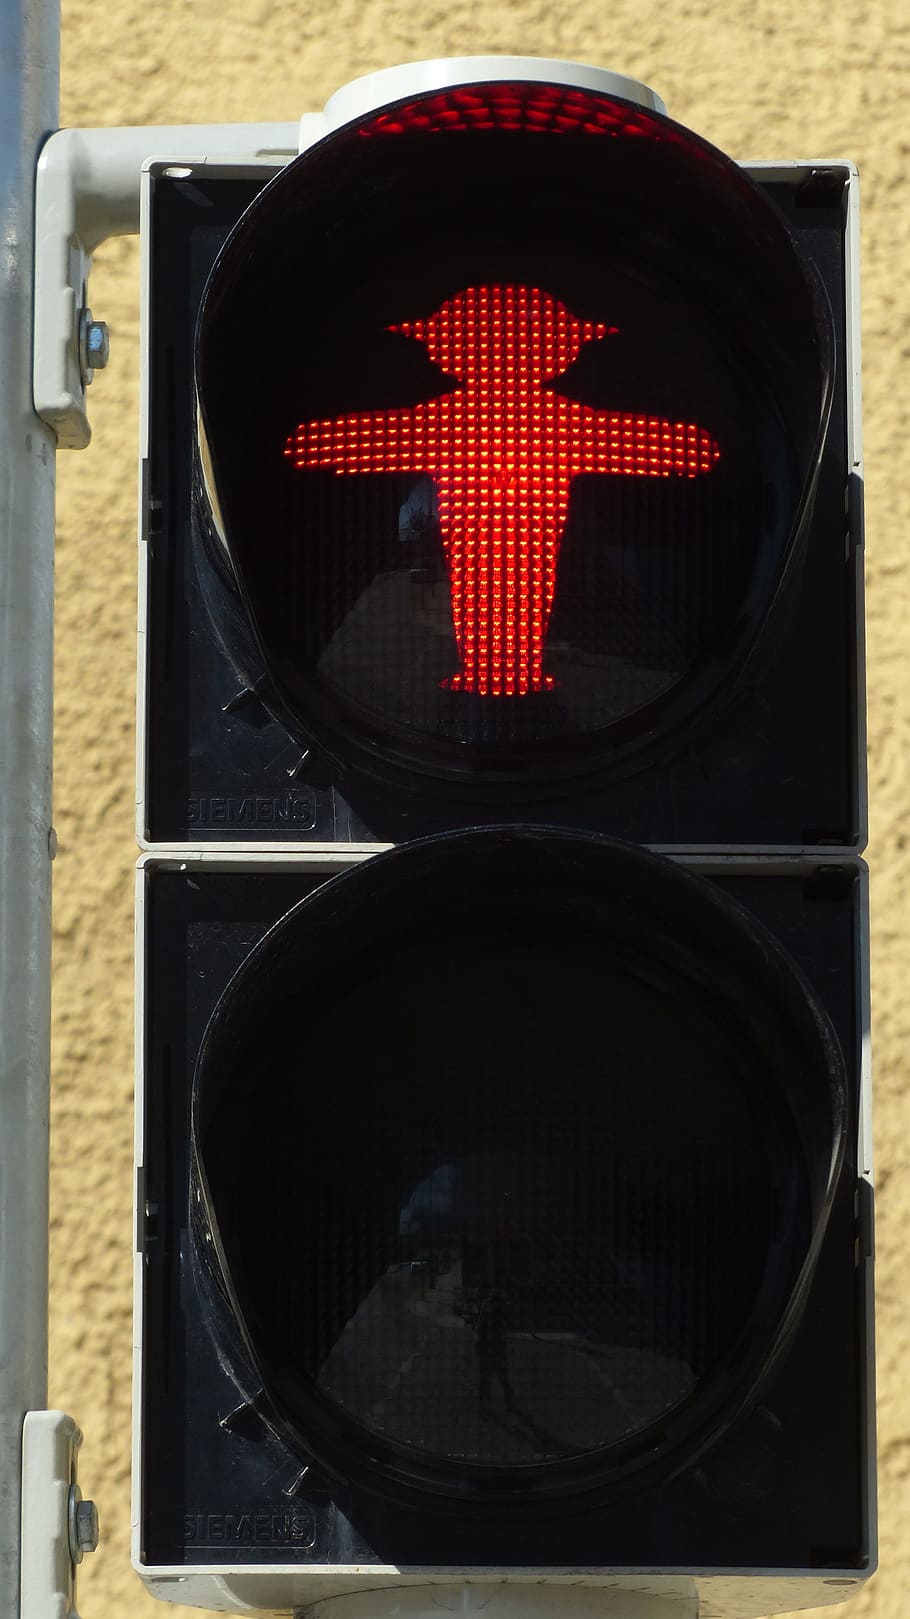 semáforos, pasarela, hombrecito verde, señal de tráfico, rojo, machos, señal de luz, machos de marcha, carretera, lámpara de señal